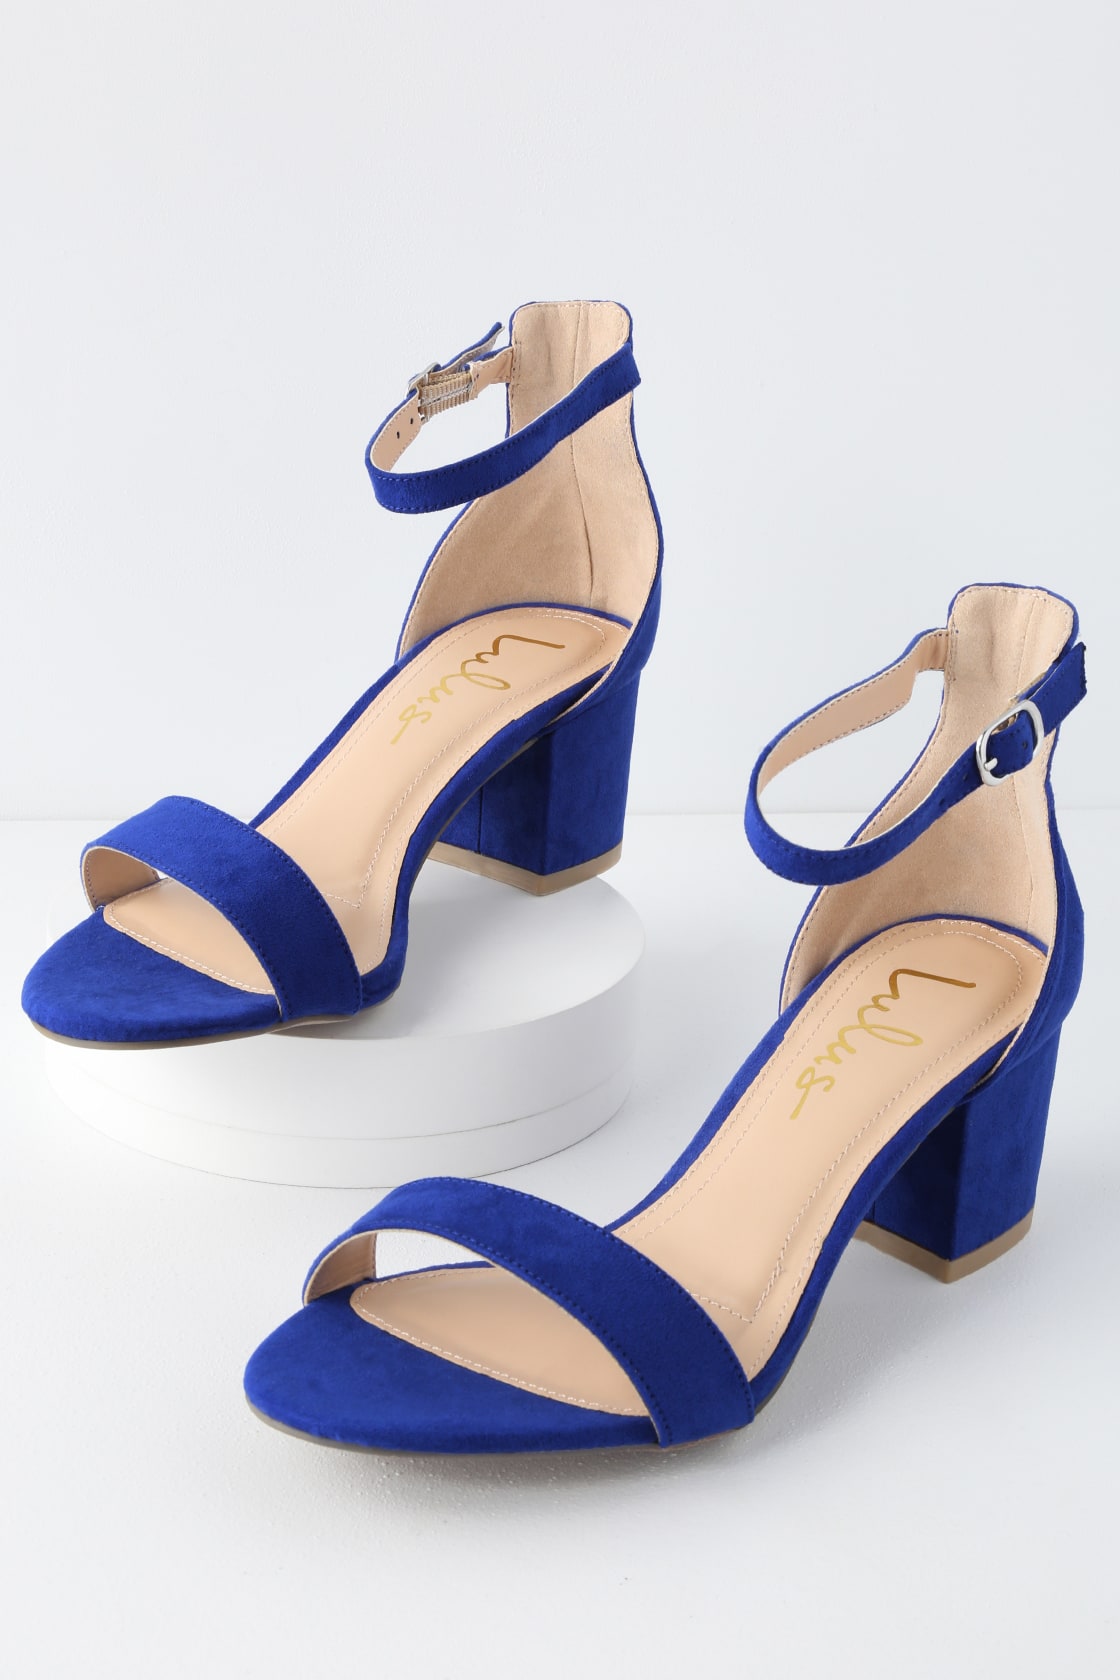 Chic Cobalt Blue Sandals - Single Sole Heels - Block Heel Sandals - Lulus